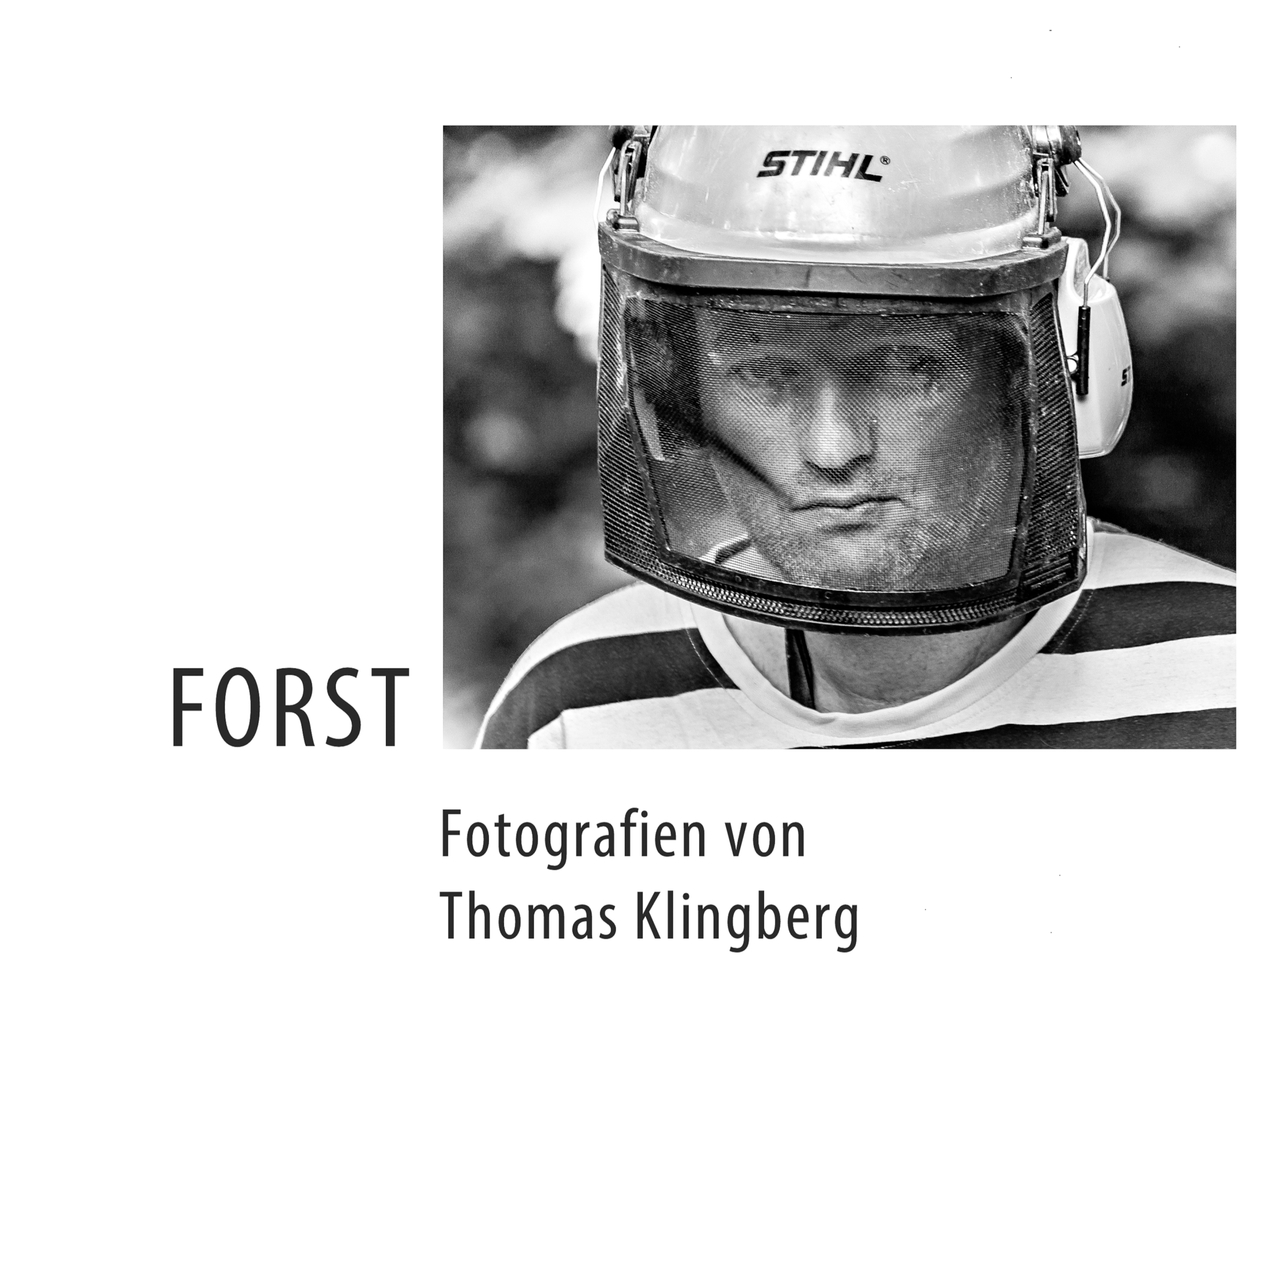 FORST - Sozialdokumentarische Fotografie von Thomas Klingberg